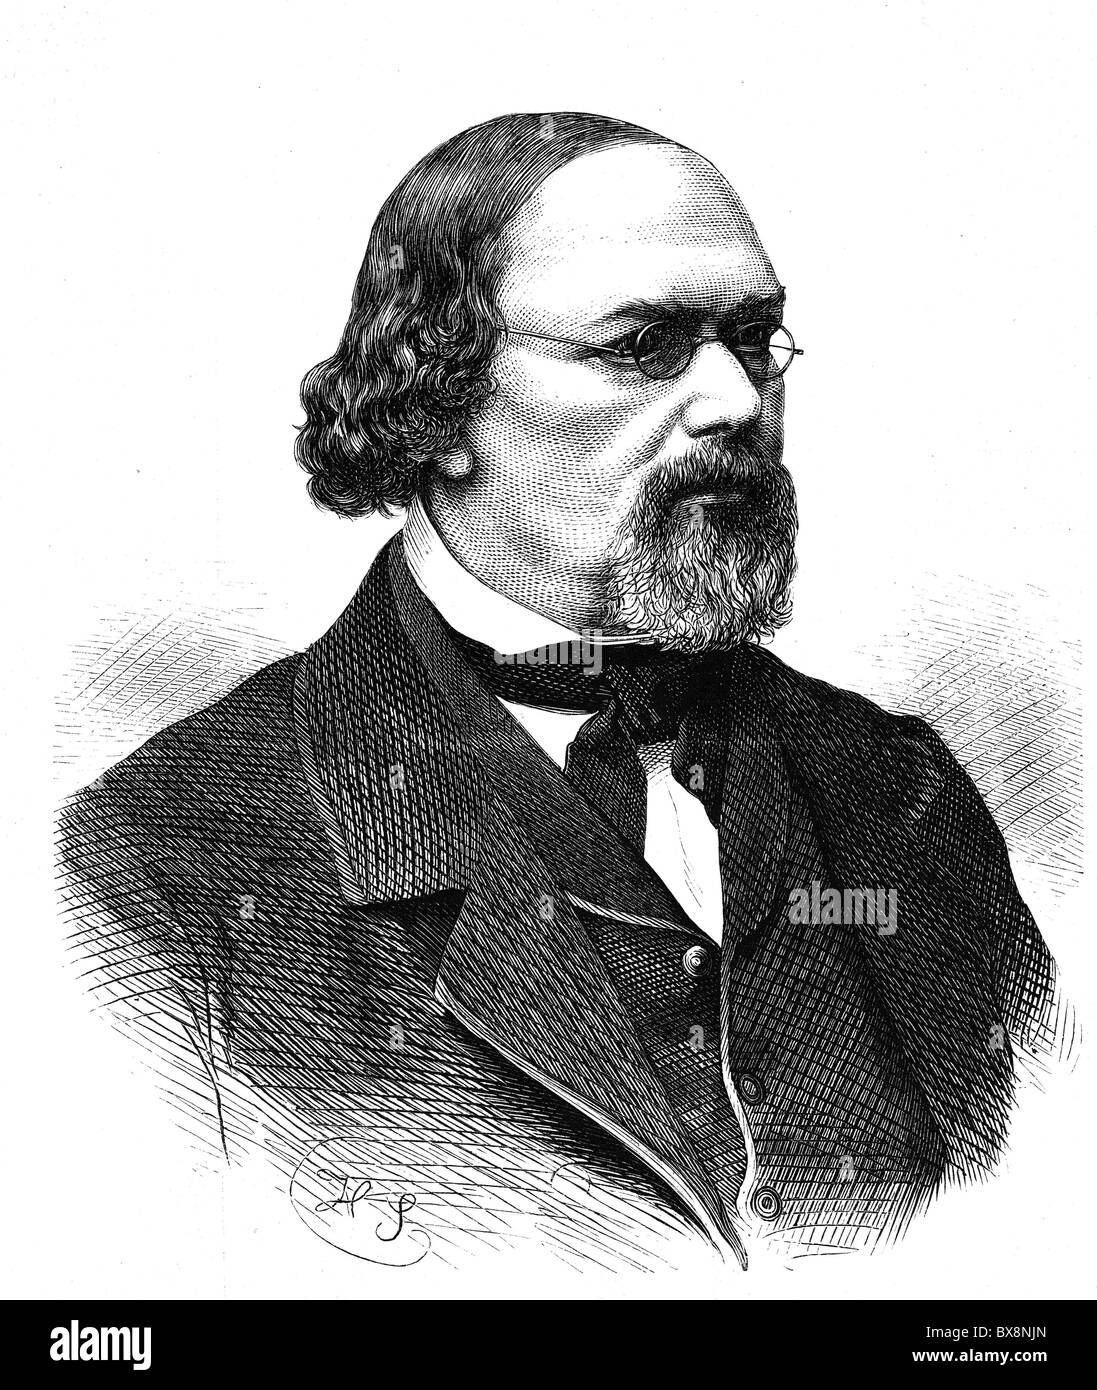 Opermann, Heinrich Albert, 22.7.1812 - 16.2.1870, jurista alemán, político, autor / escritor, retrato, grabado en madera, publicado en 1870, Foto de stock